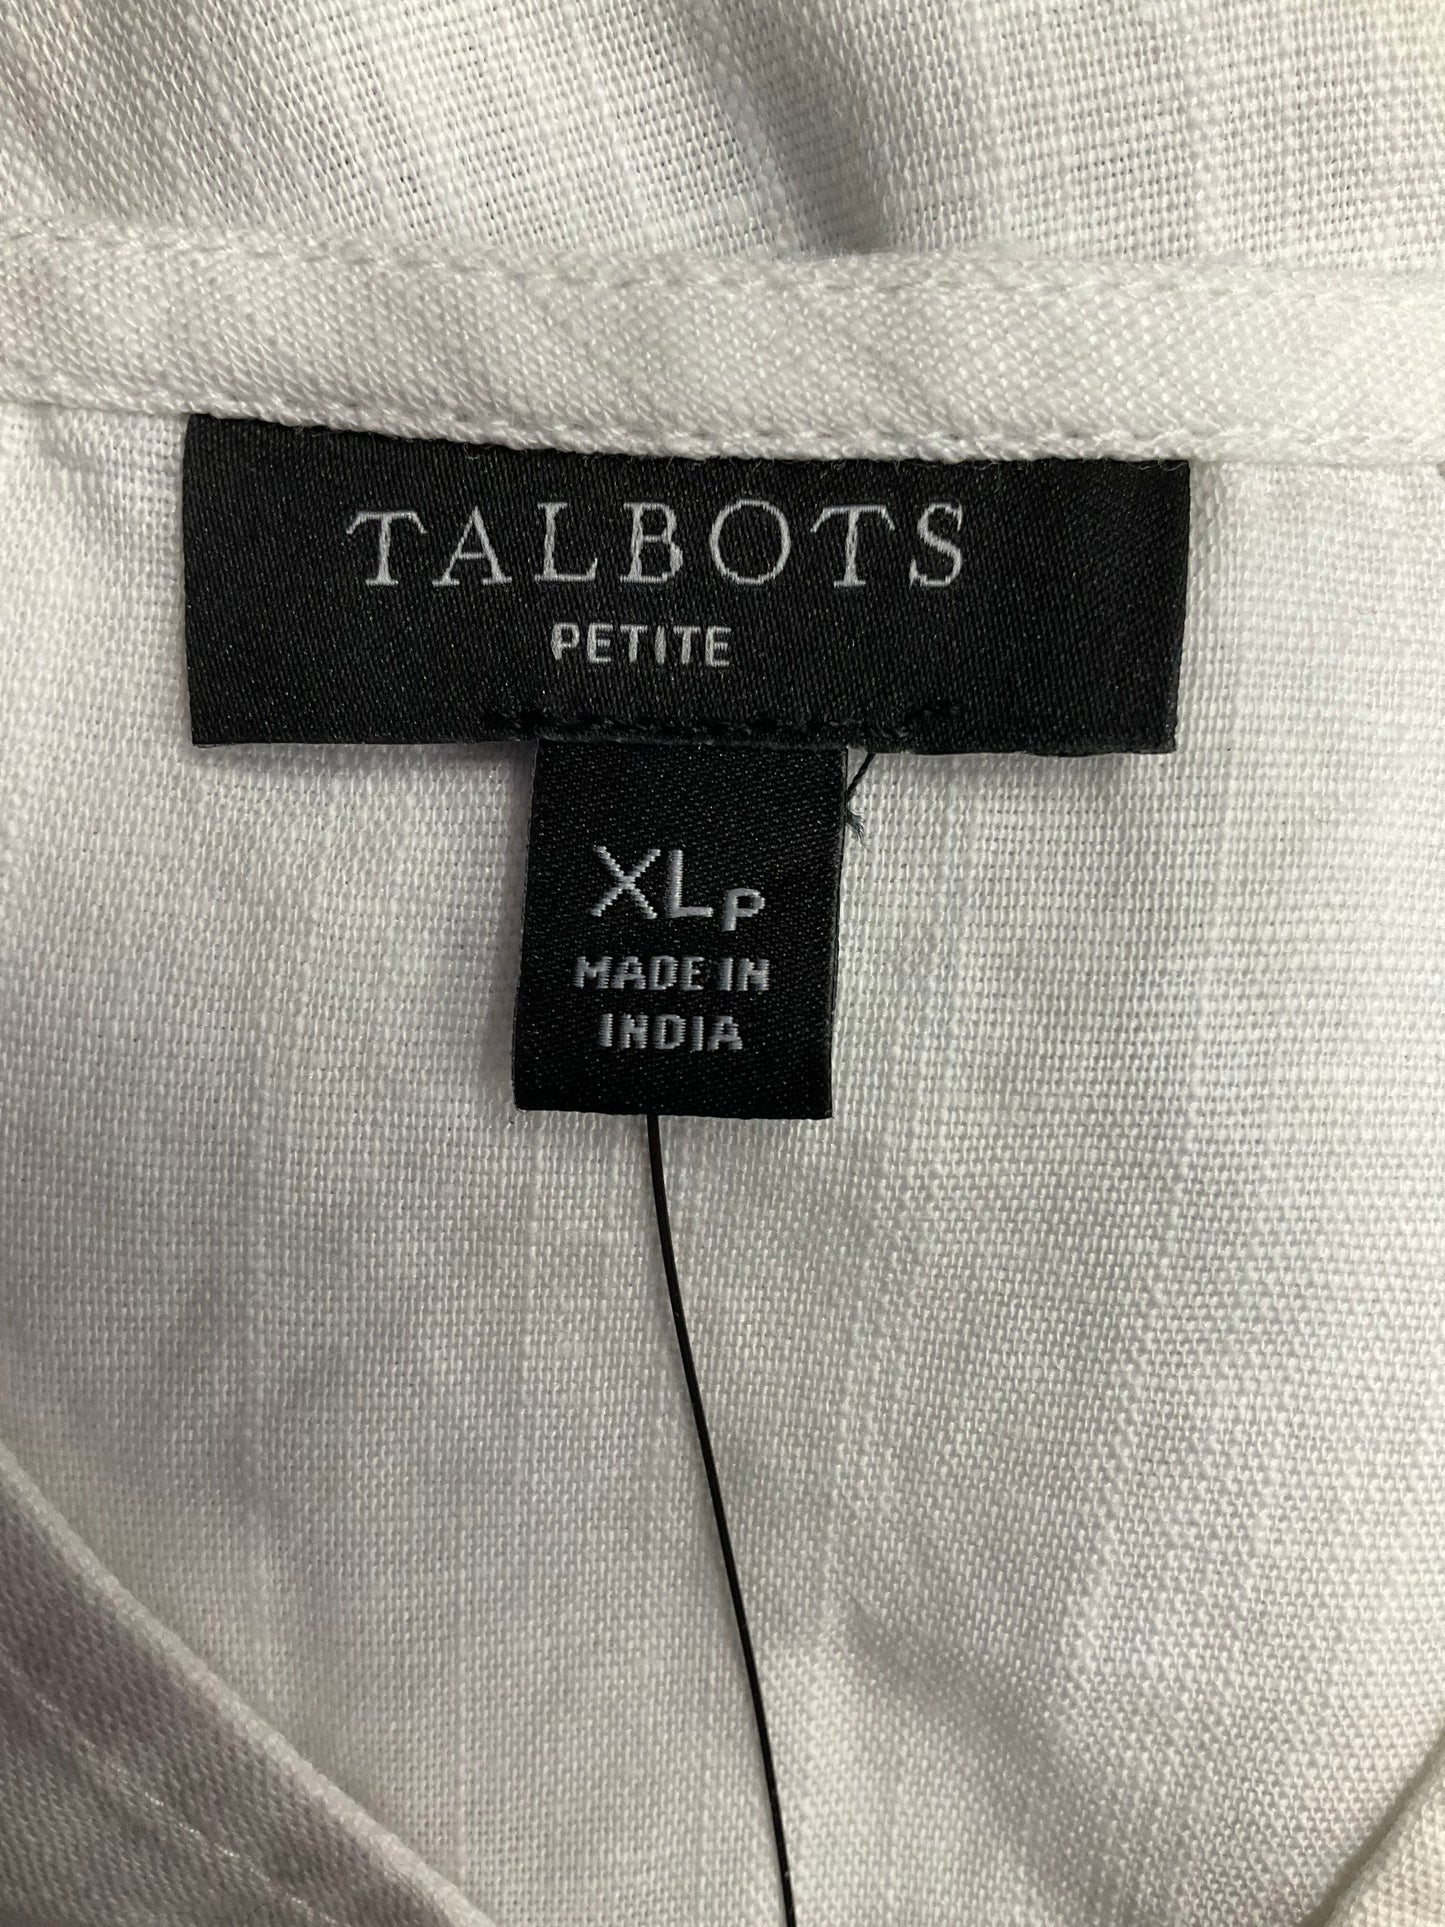 White Top Sleeveless Talbots, Size Xl